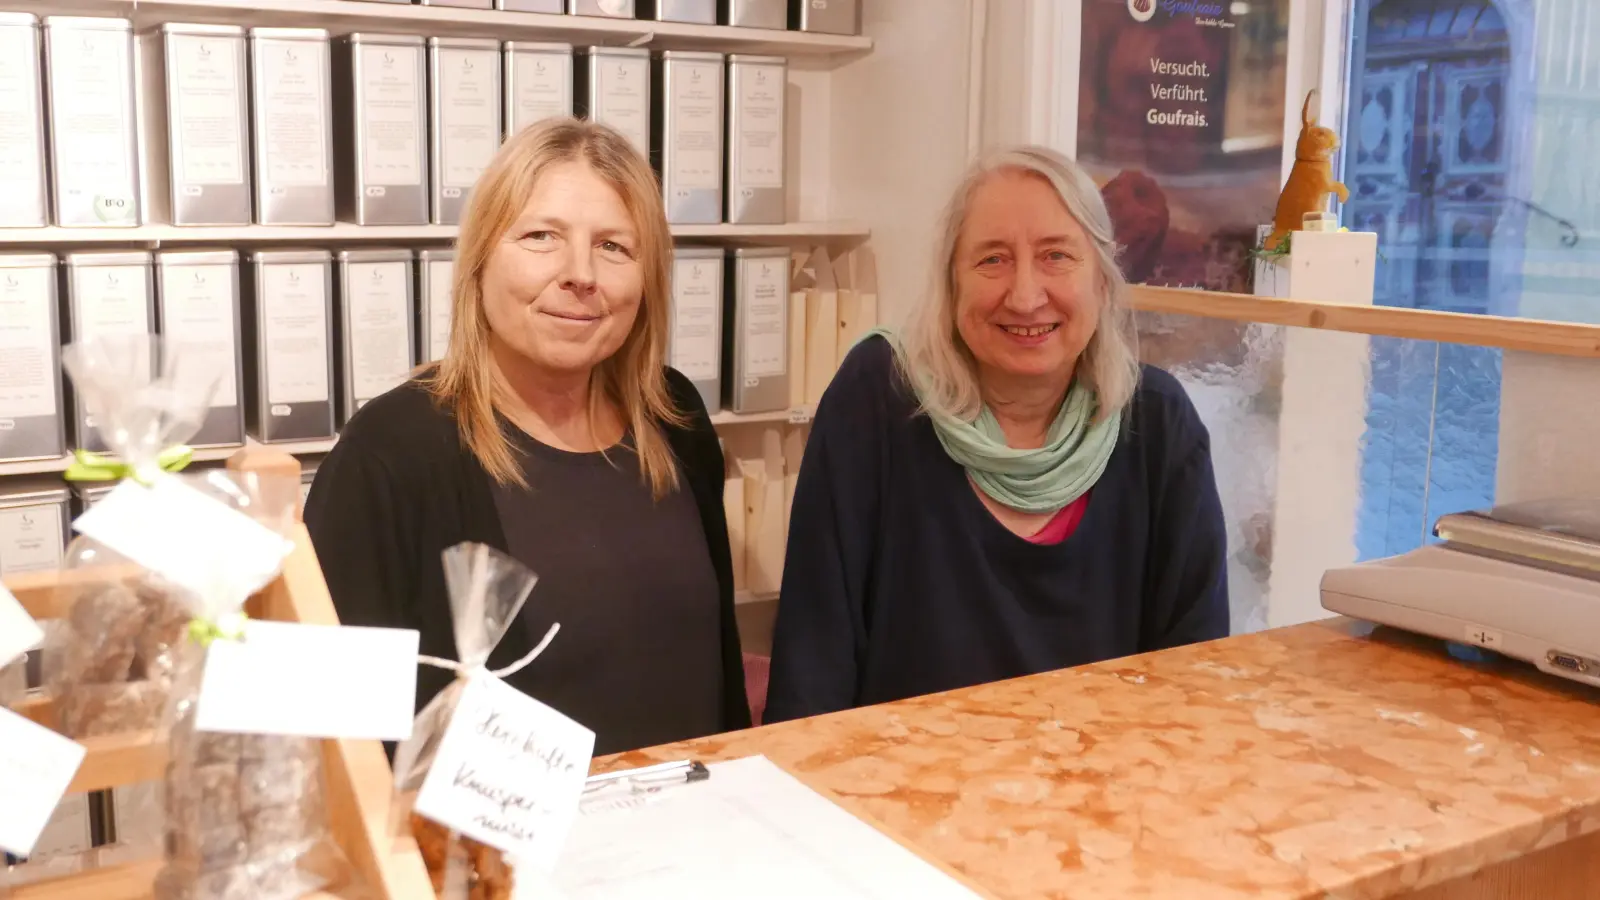 Der Fortbestand im Teatime ist gesichert: Die neue Pächterin Claudia Rögele (links) und Inhaberin Cornelia Anders haben hinter der Theke in dem kleinen Café in der Turmgasse Platz genommen. (Foto: Roman Kocholl)